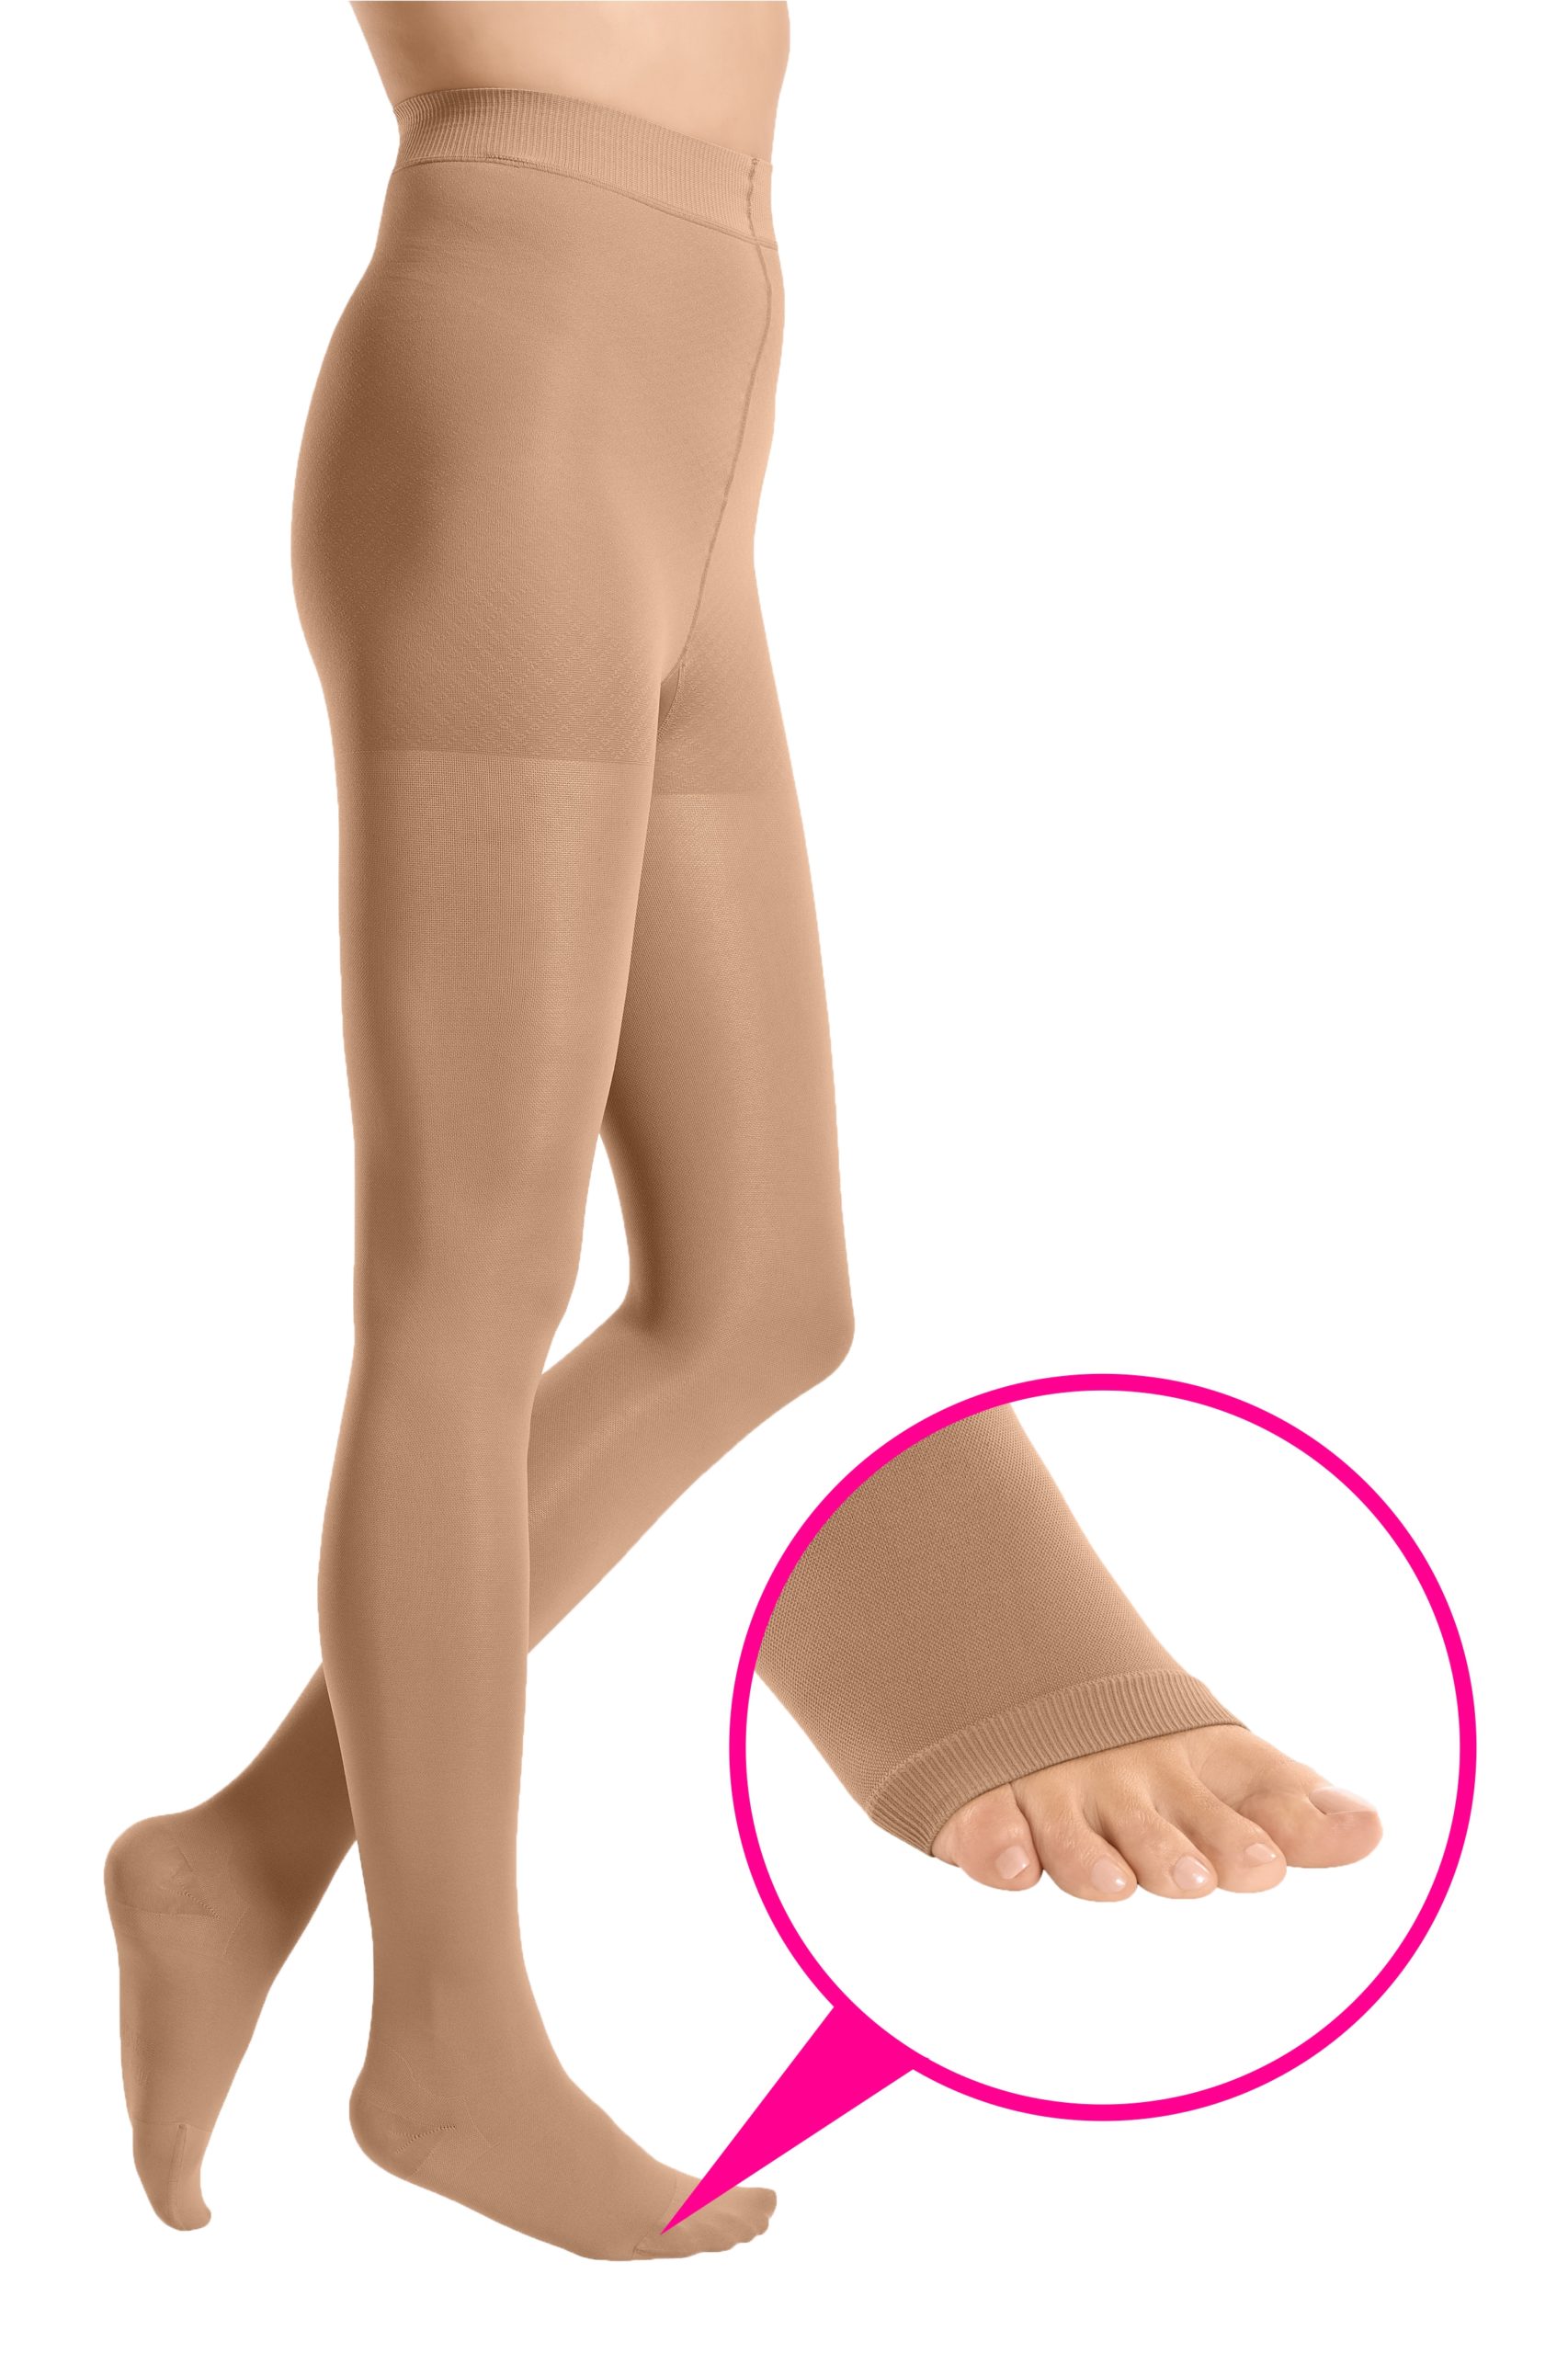 duomed® smooth panty open toe - Медицинские компрессионные колготки с открытым  носком сочетающим в себе медицинскую эффективность и стильную элегантность  для лечения заболеваний вен с оптимальным соотношением цена/качество